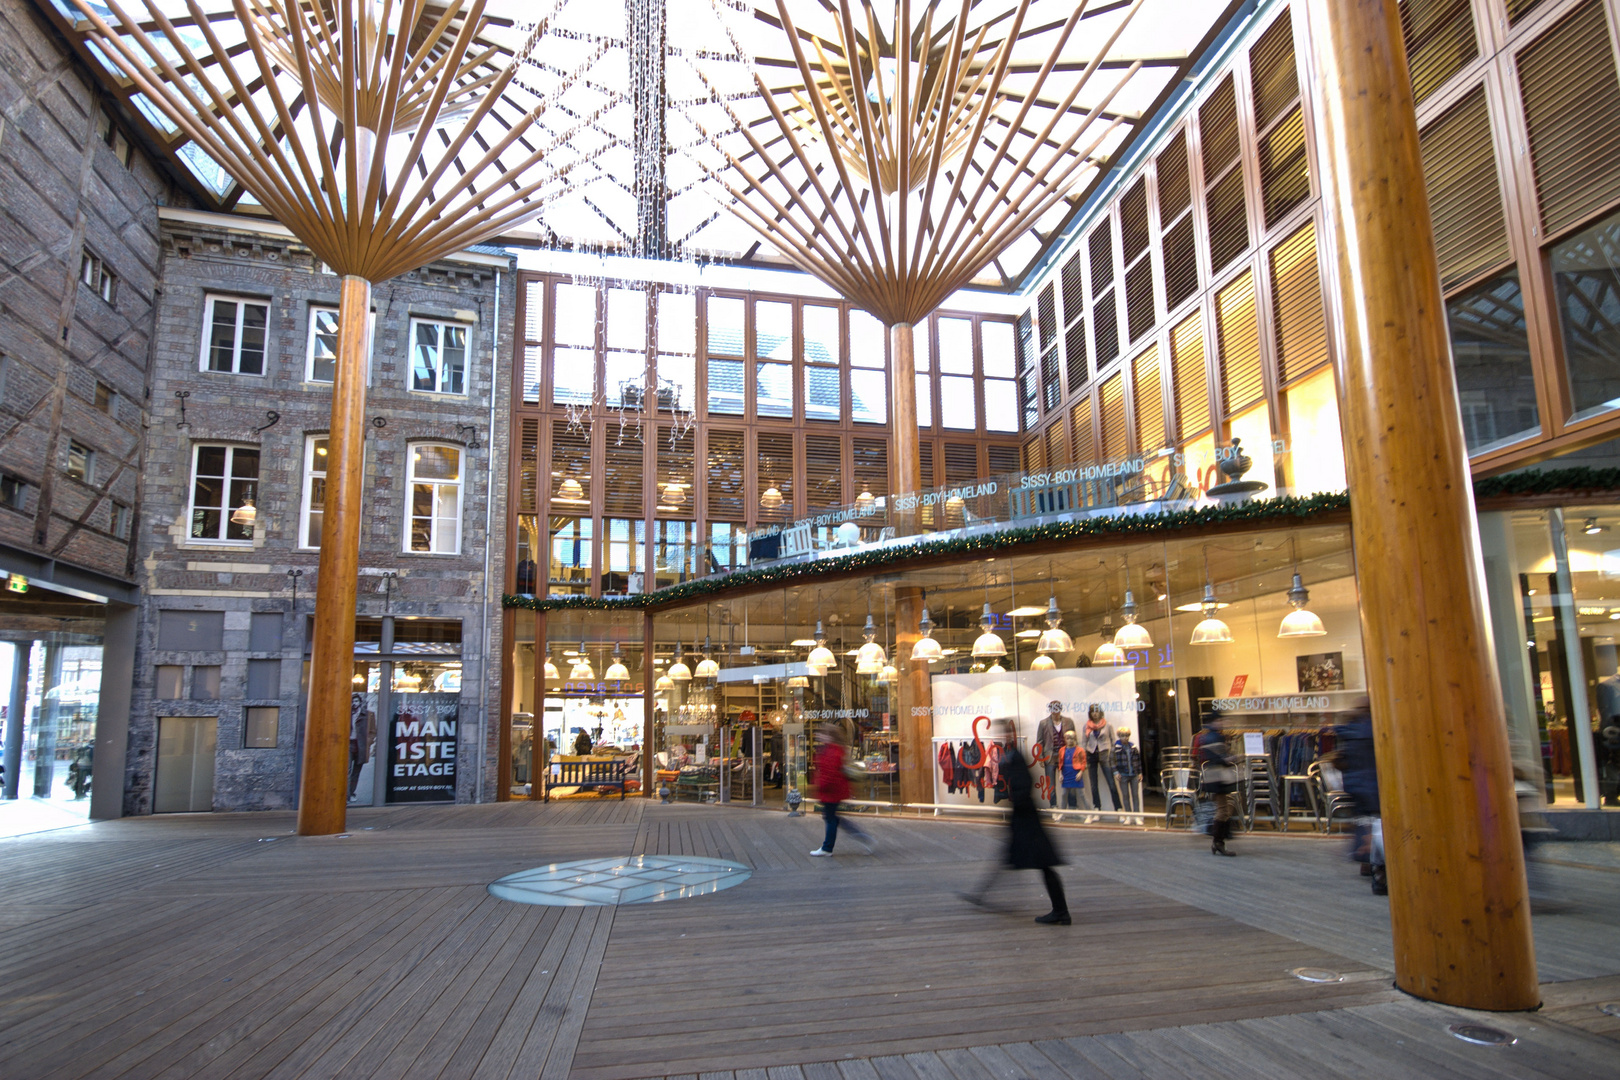 Maastricht - Shopping Centre "Entre Deux"